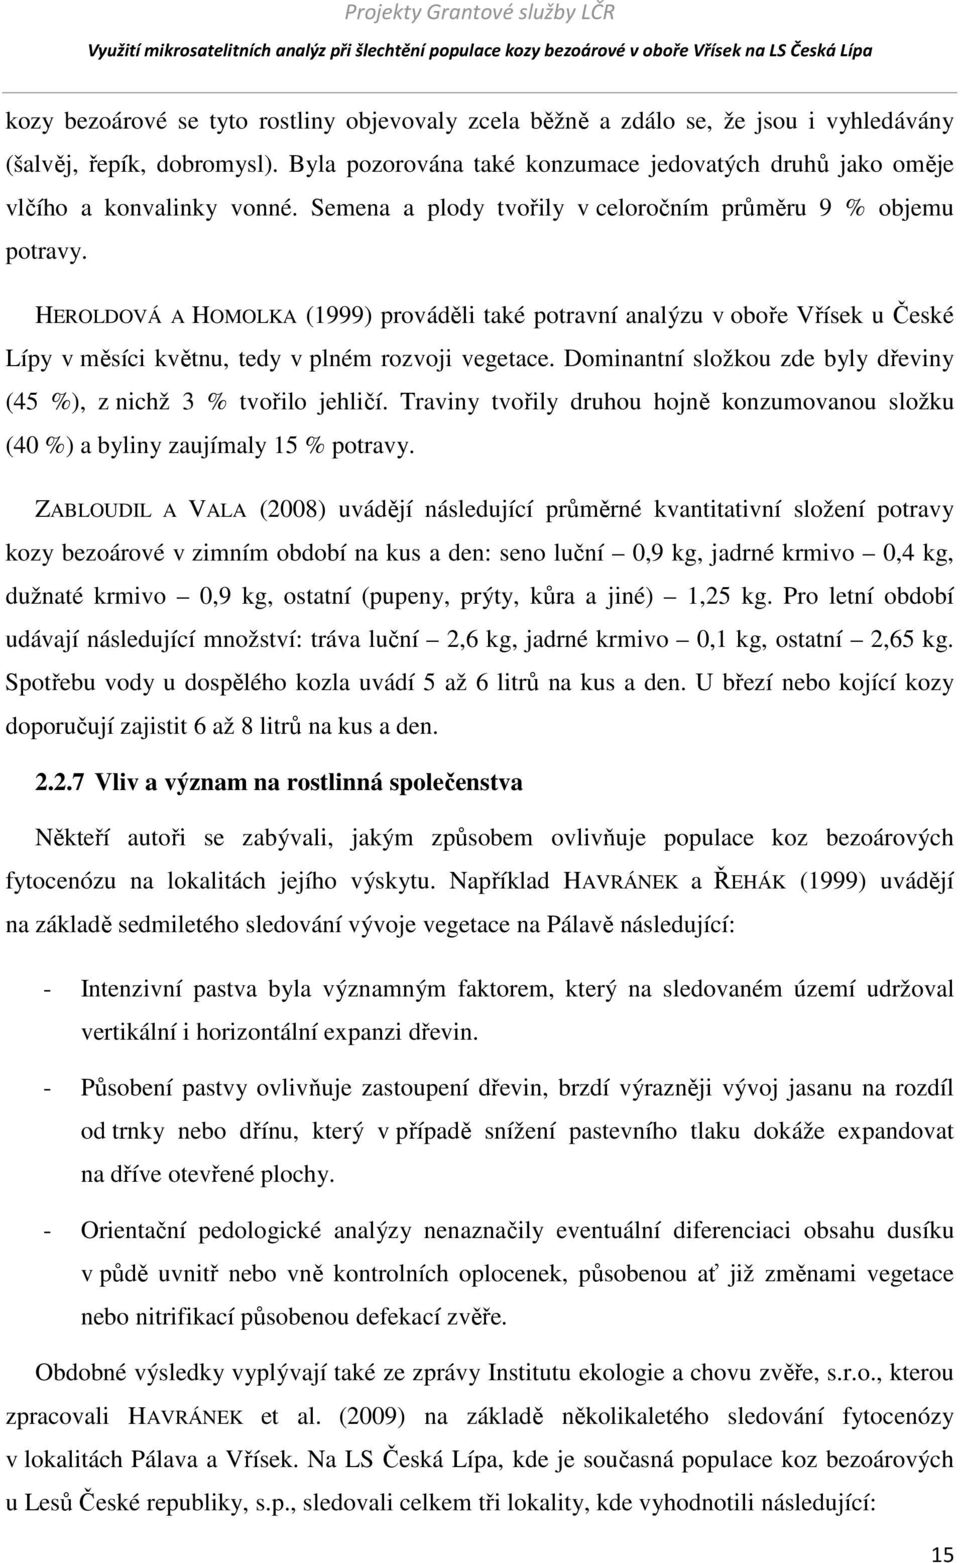 HEROLDOVÁ A HOMOLKA (1999) prováděli také potravní analýzu v oboře Vřísek u České Lípy v měsíci květnu, tedy v plném rozvoji vegetace.